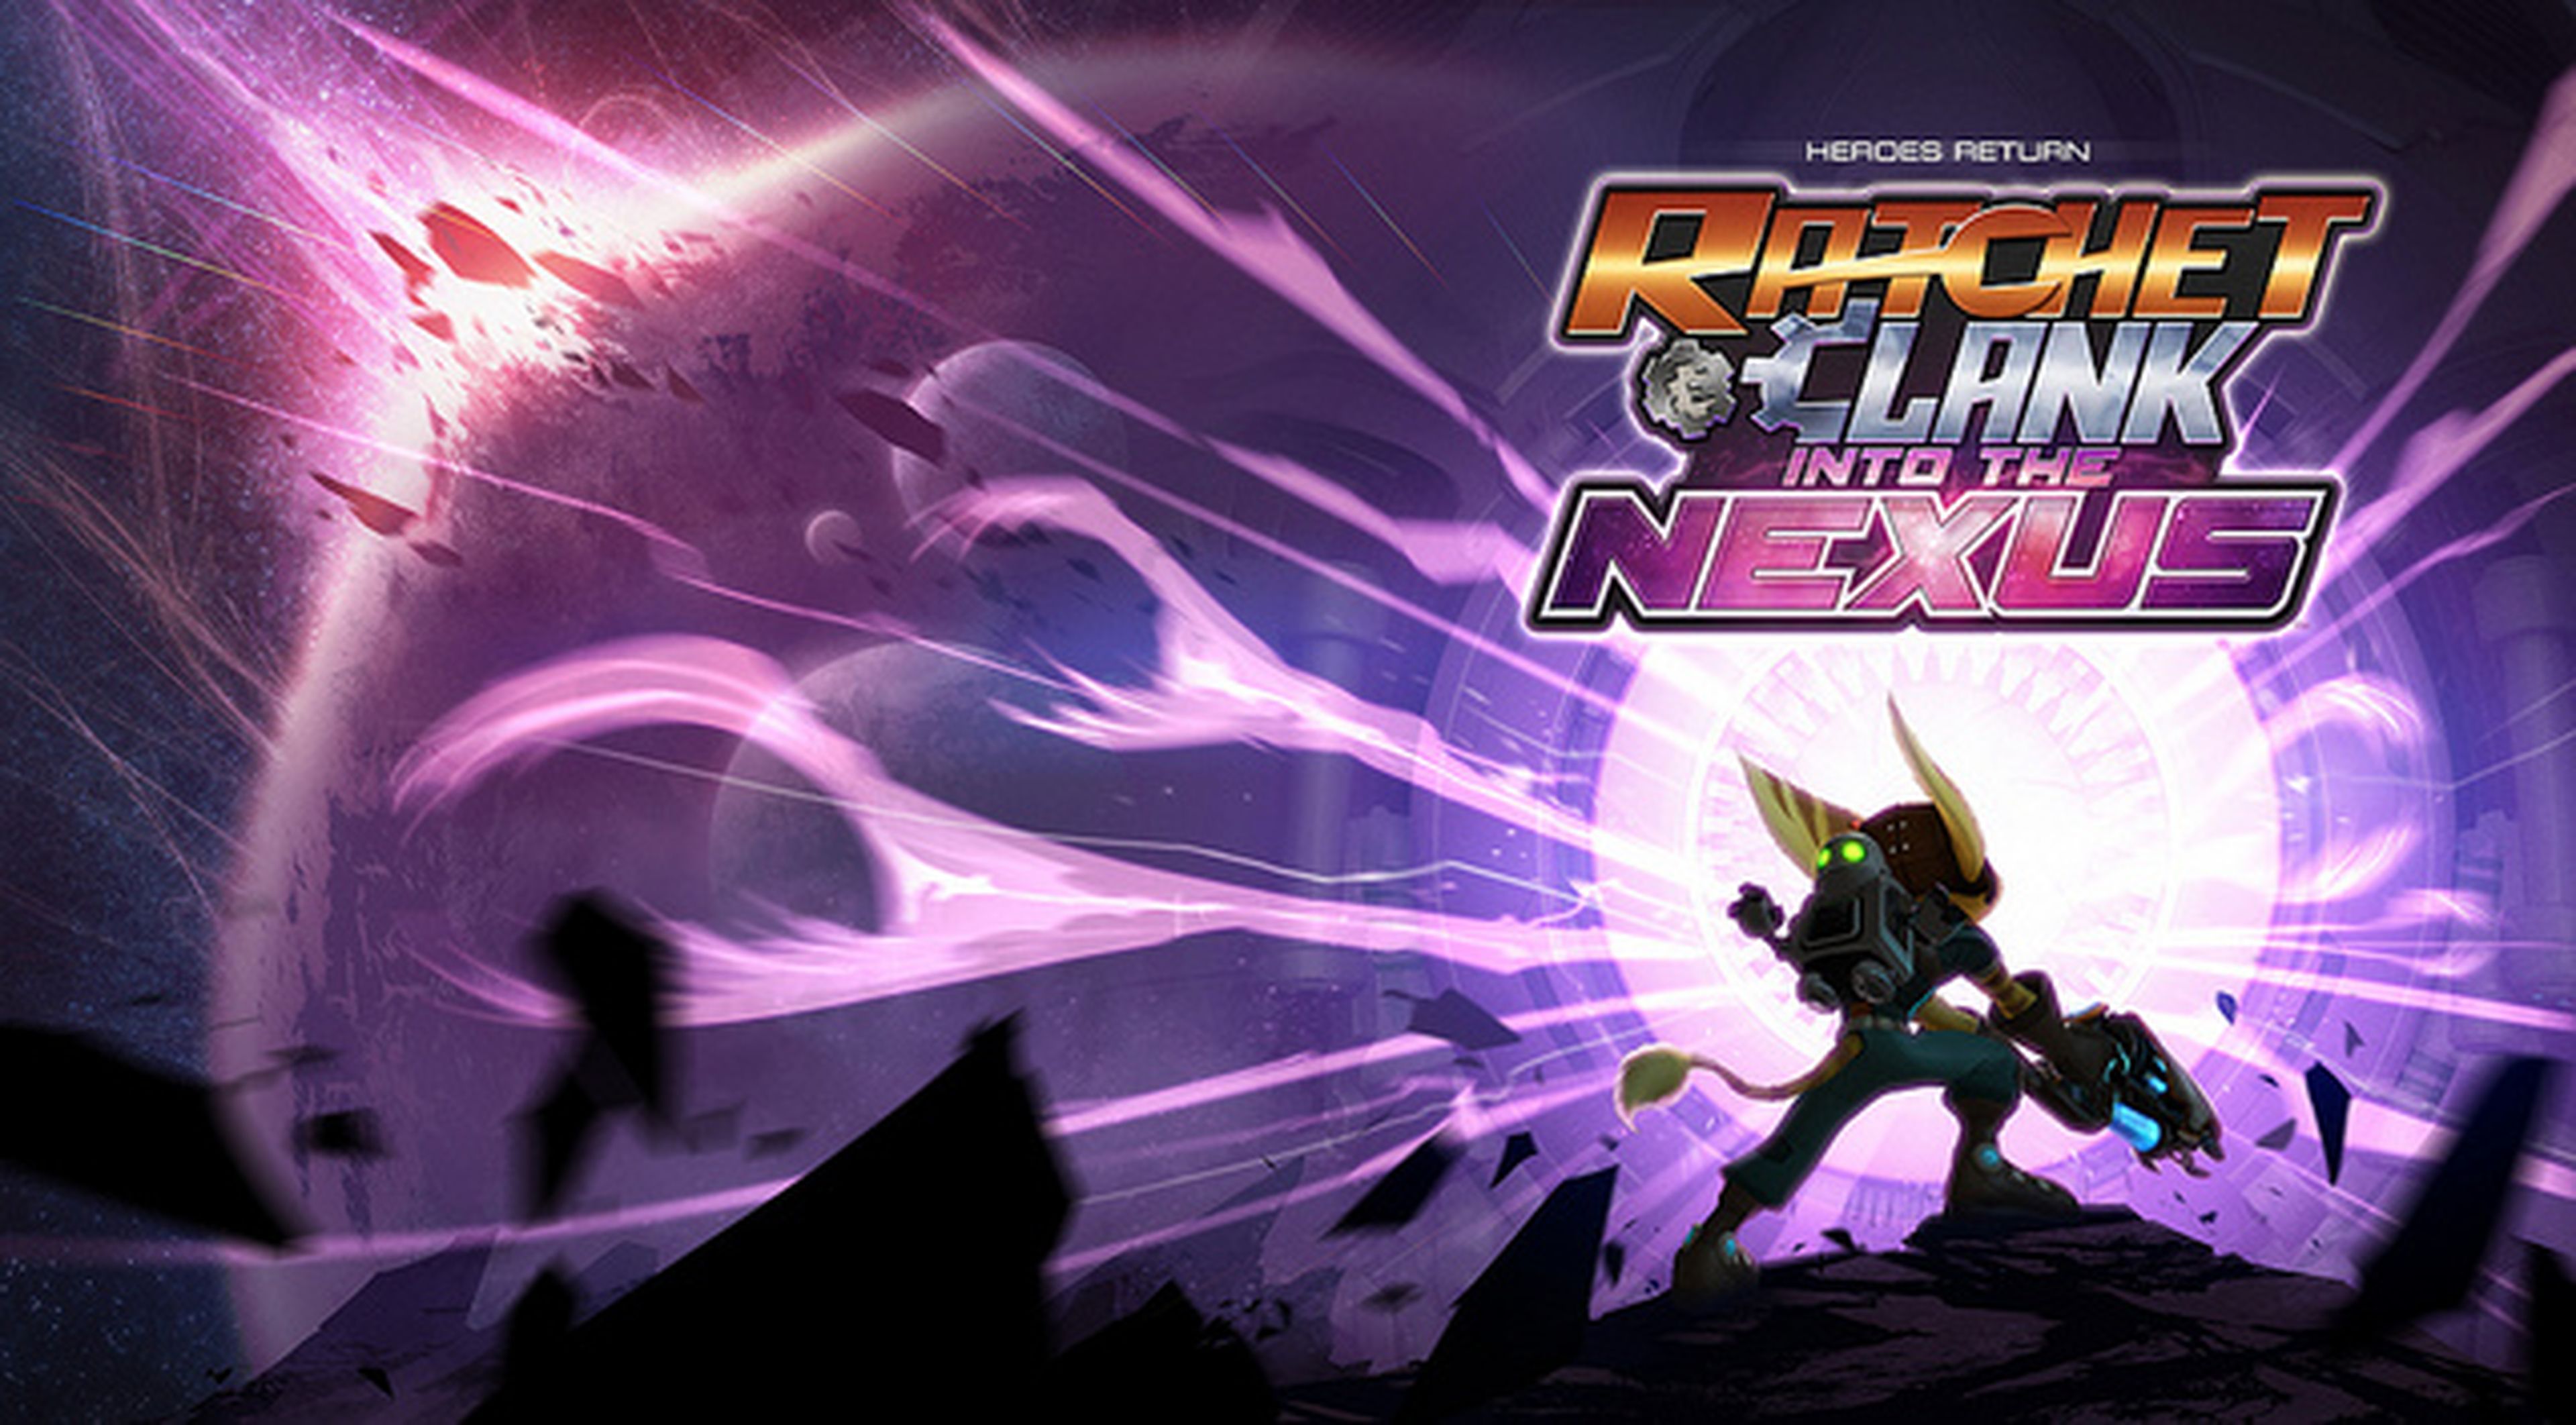 ¿Ratchet & Clank Into the Nexus en PS Vita?